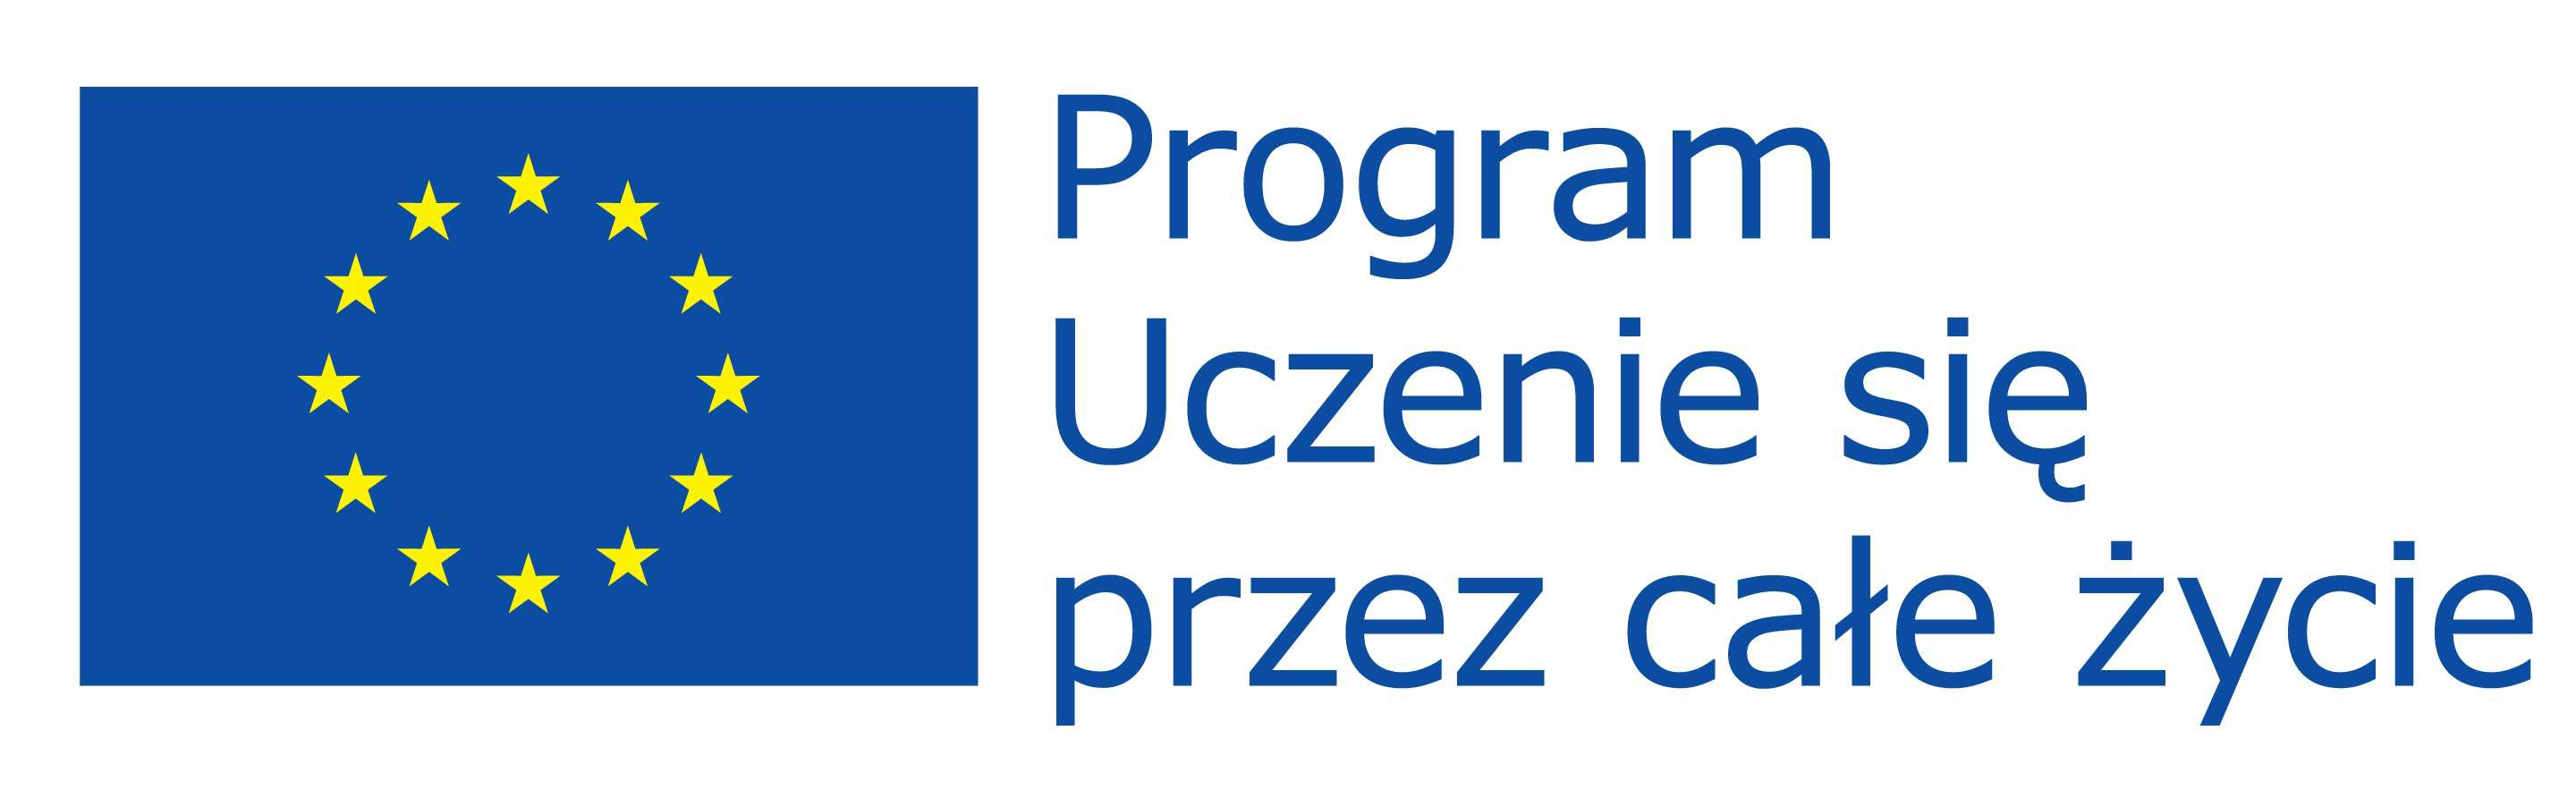 Projekt: Dwa modele wzmacniania pozycji absolwentów szkół wyższych na rynku pracy nr 2012-1-PL1-LEO02-27677 Projekt został realizowany przy wsparciu finansowym Komisji Europejskiej w ramach programu